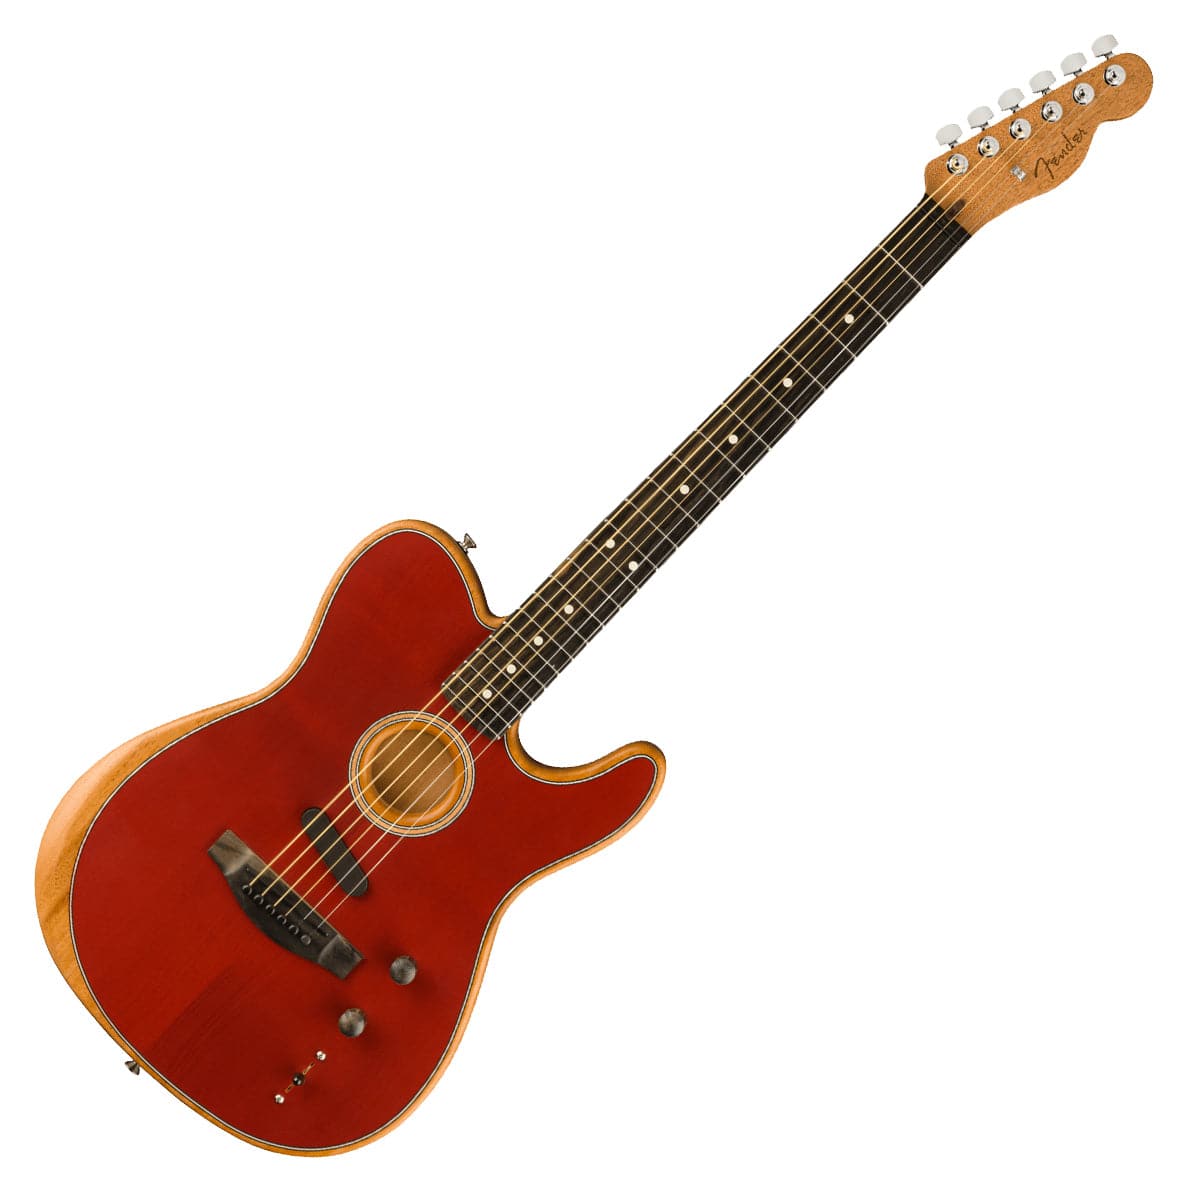 Fender American Acoustasonic Telecaster - Crimson Red